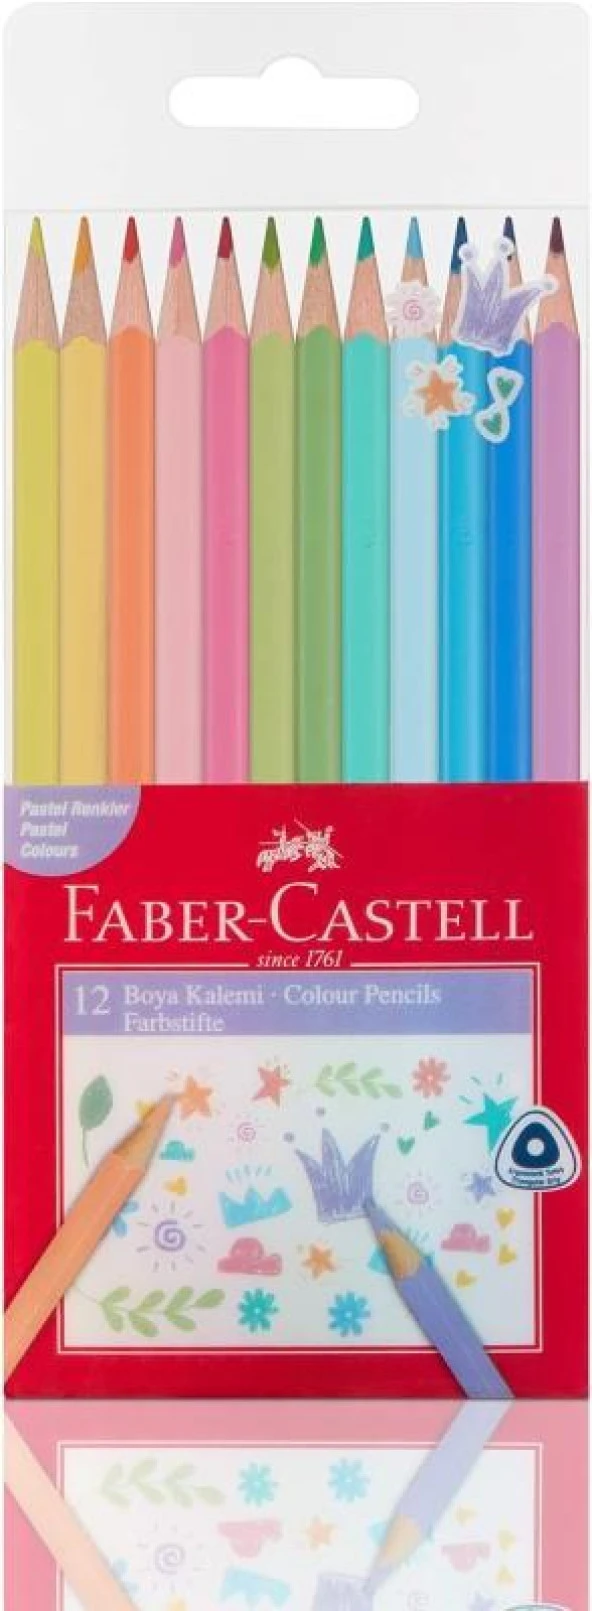 Faber Castell Kuru Boya Kalemi Pastel Renkler 12'li Paket